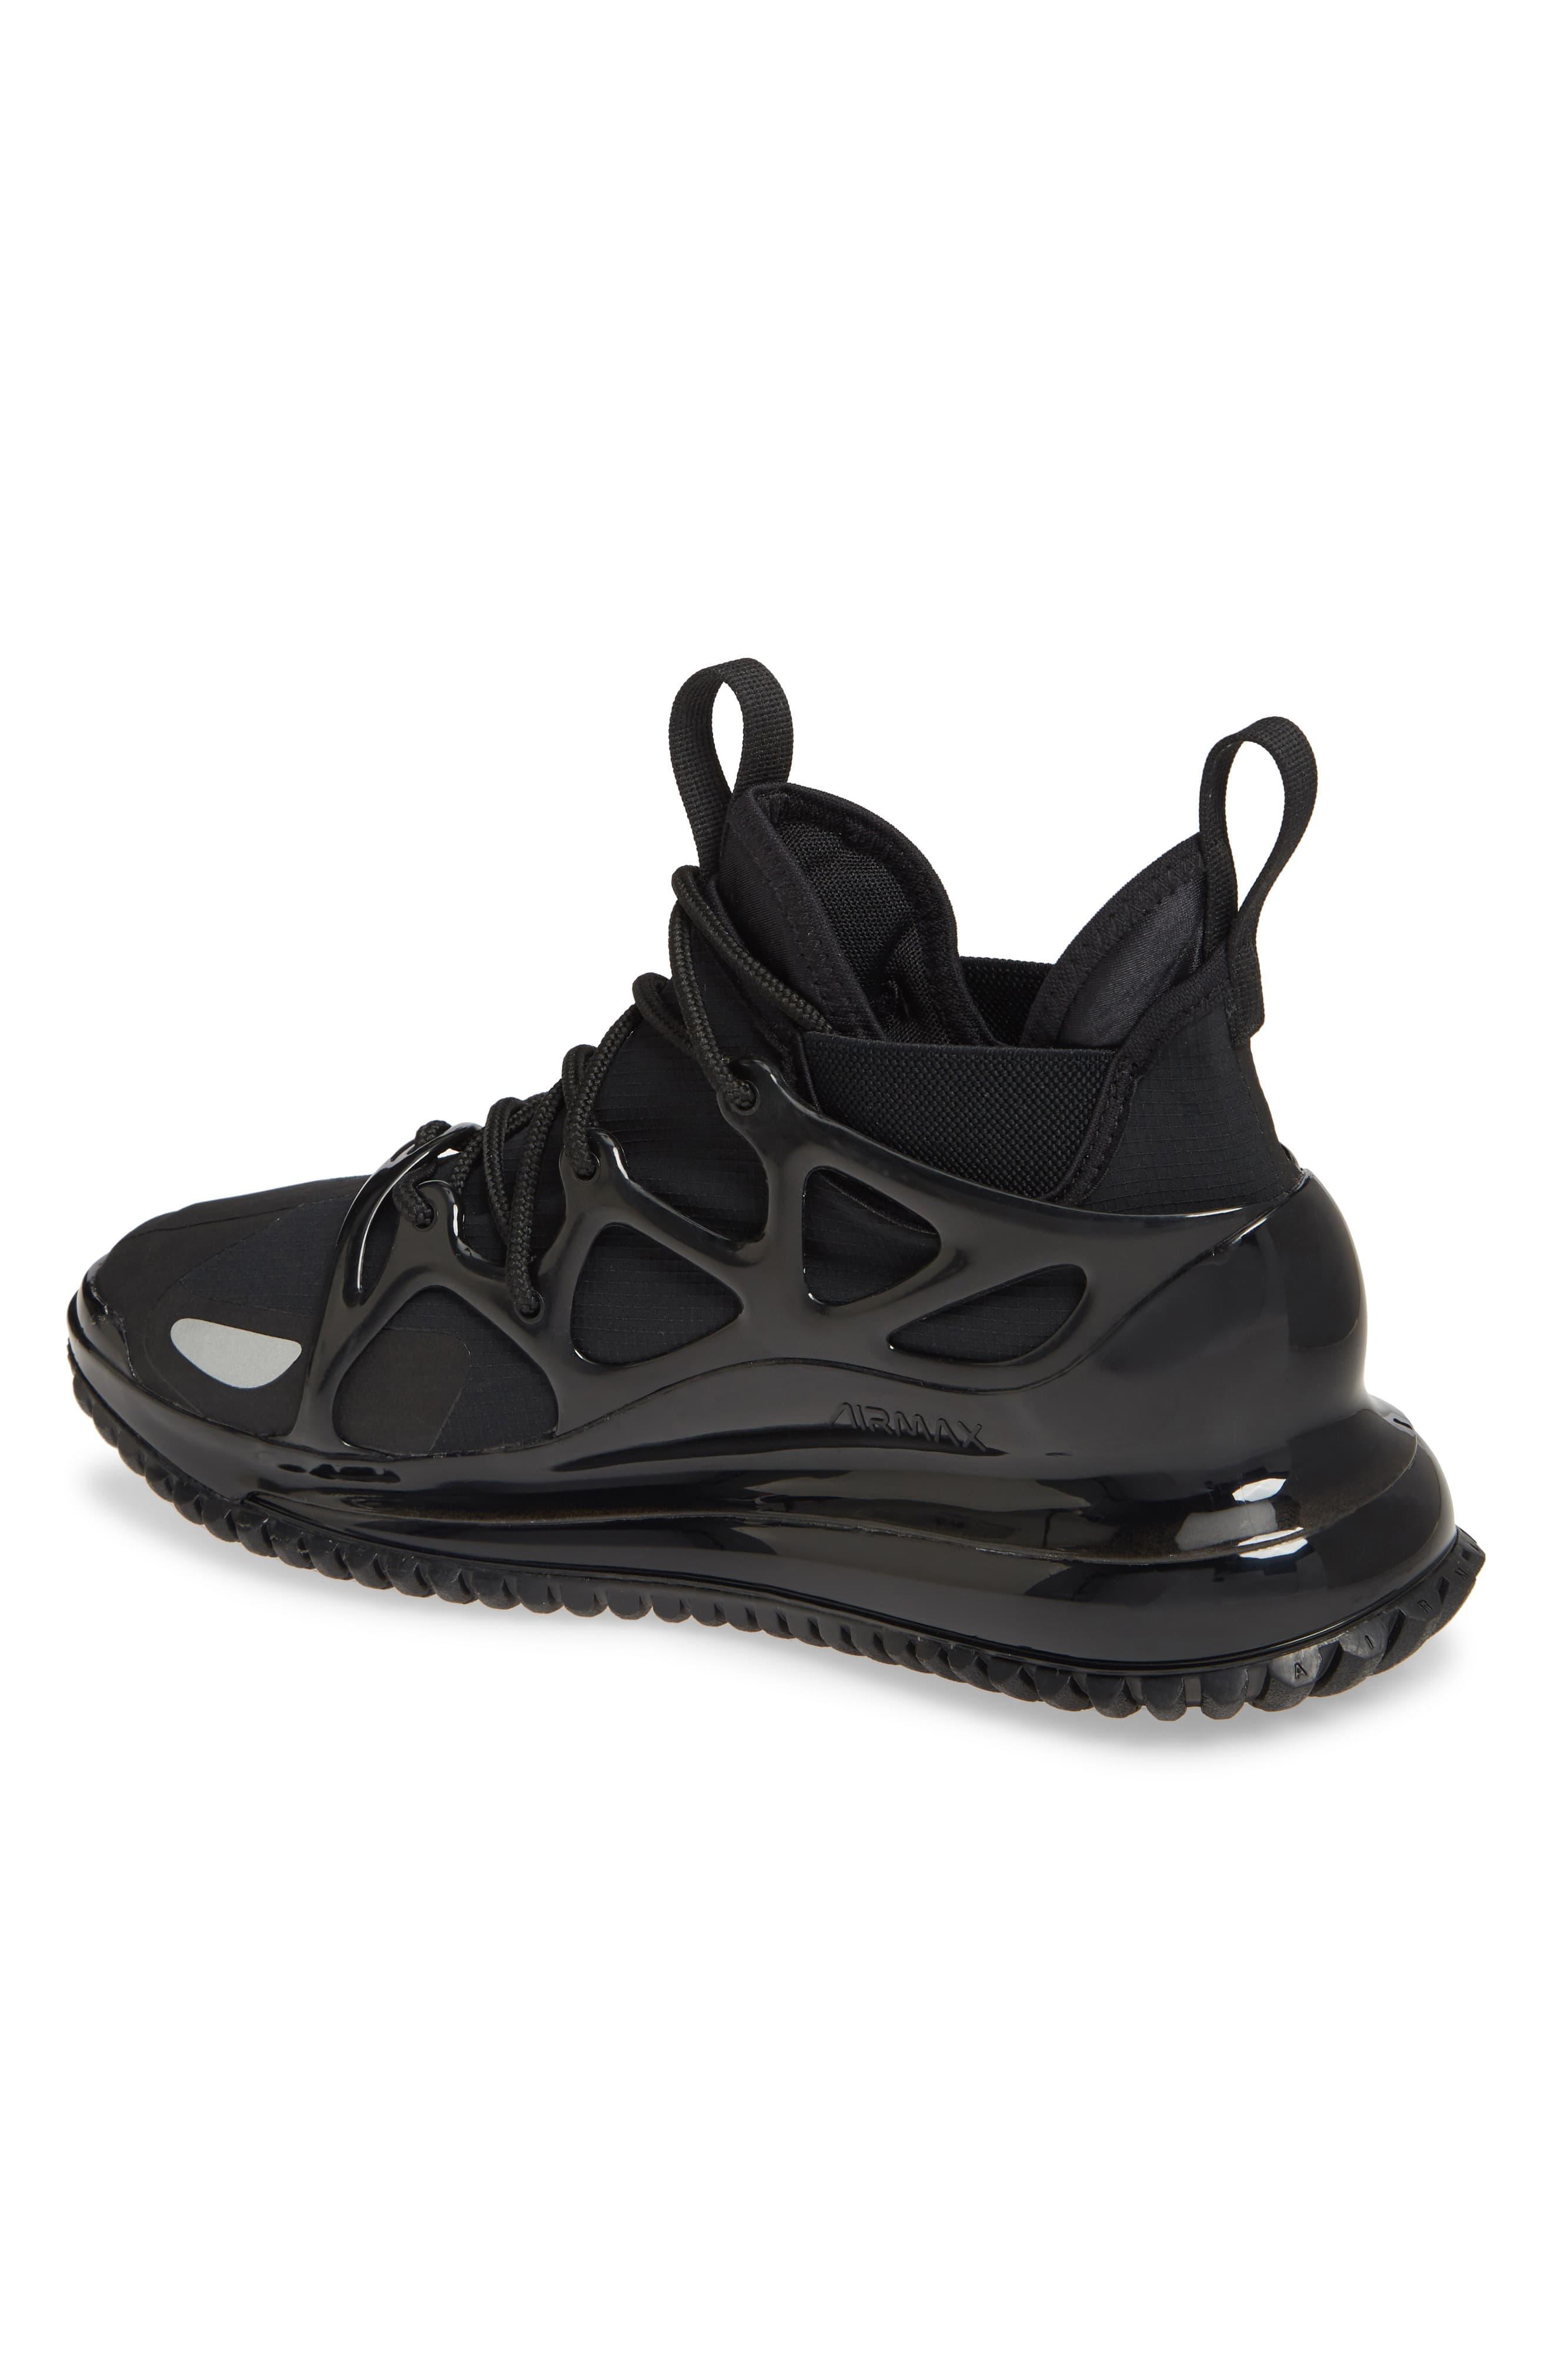 nike waterproof sneaker boots